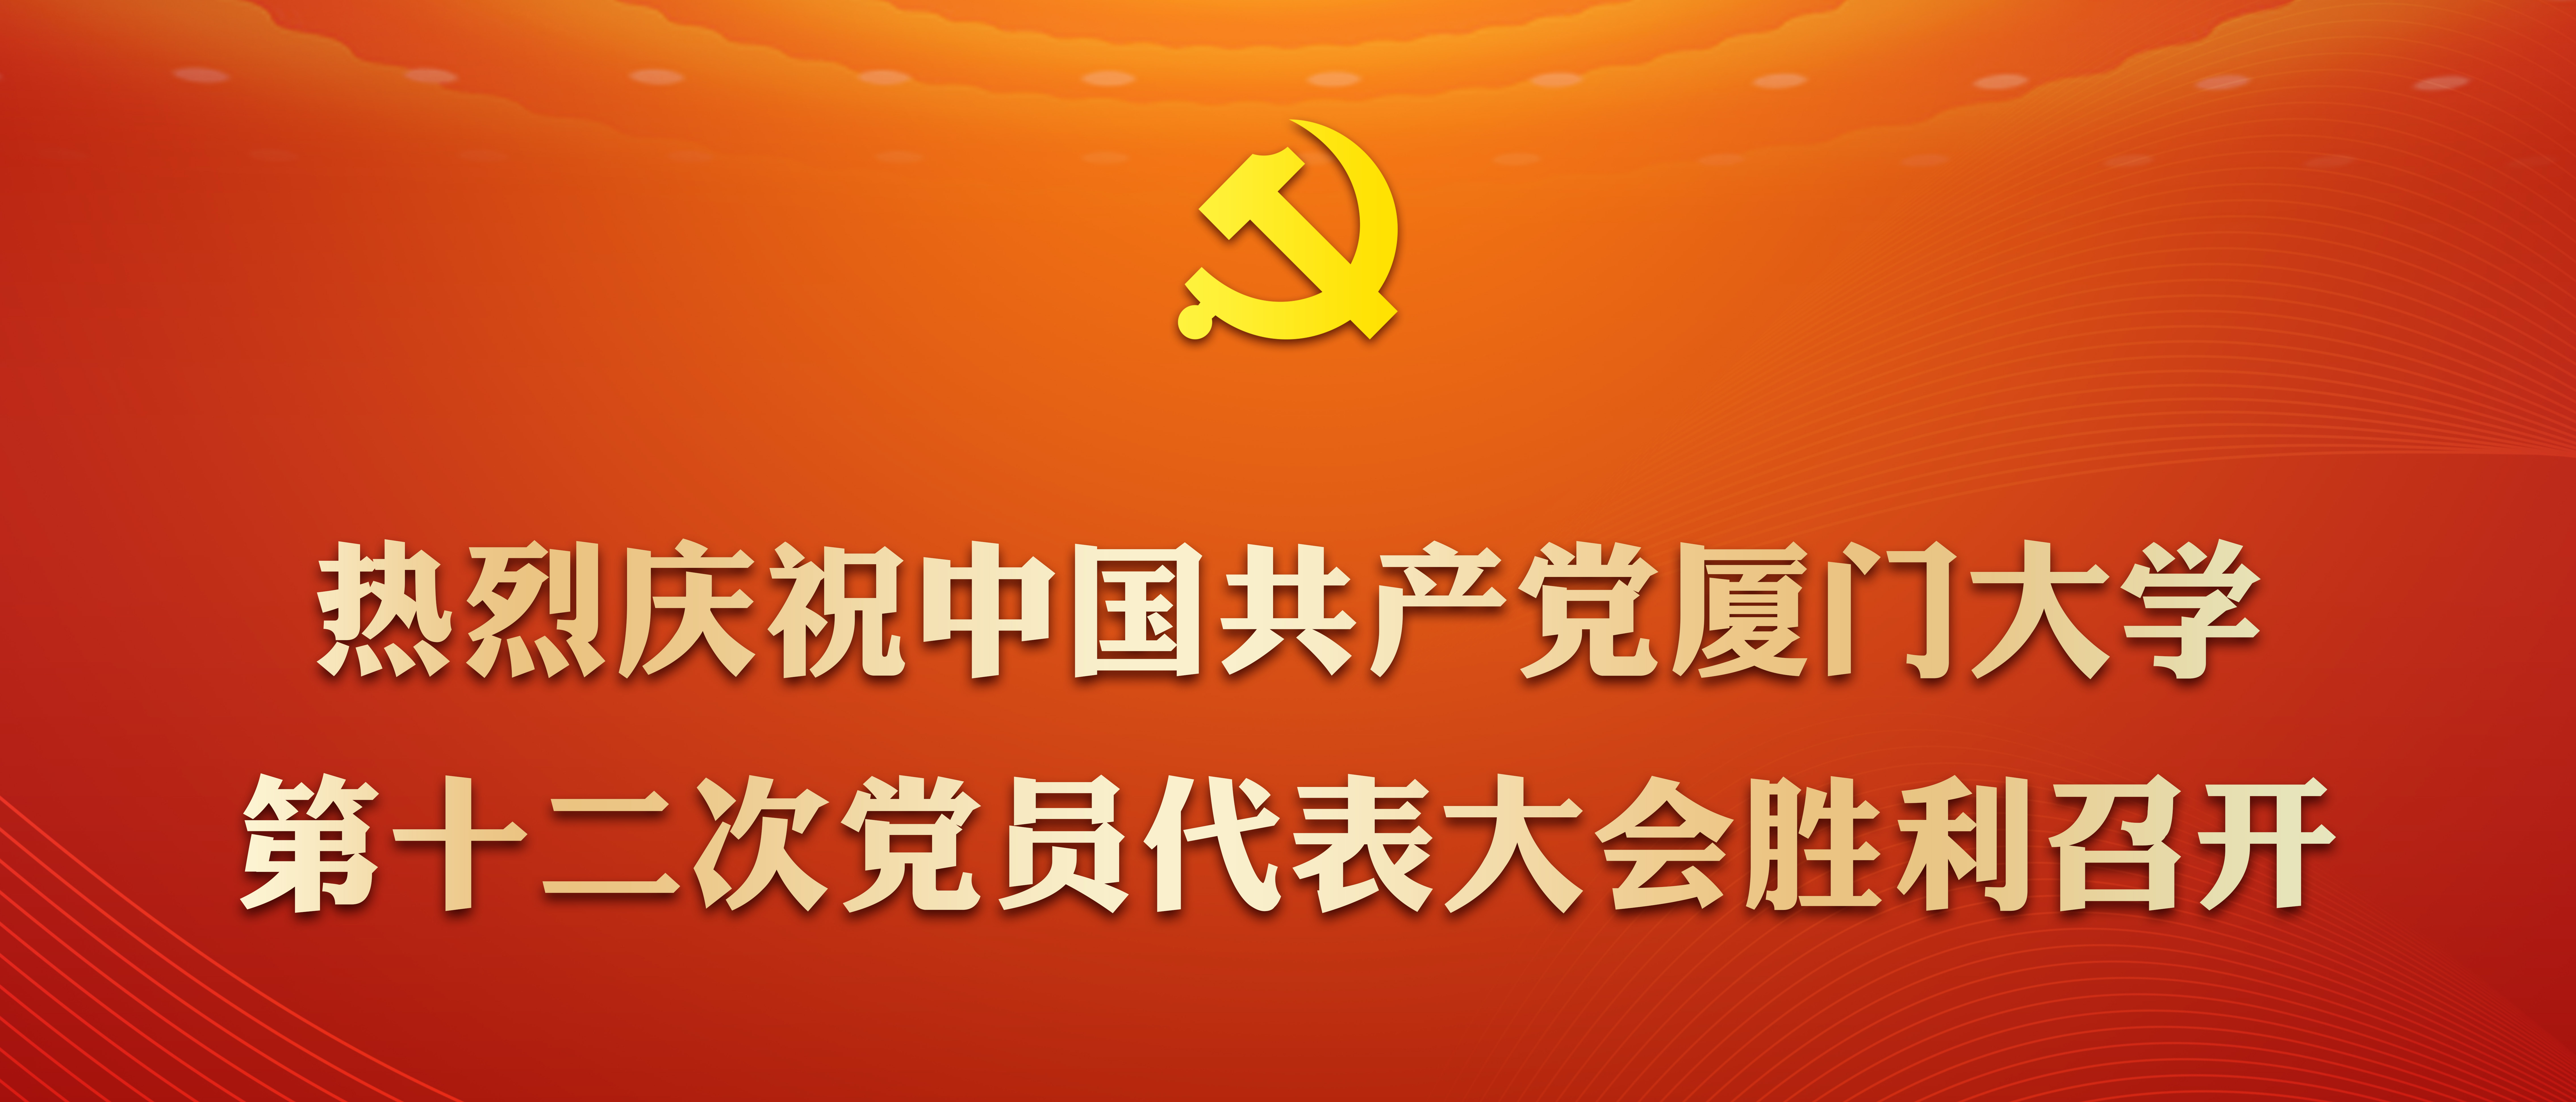 热烈庆祝中国共产党OB欧宝体育第十...